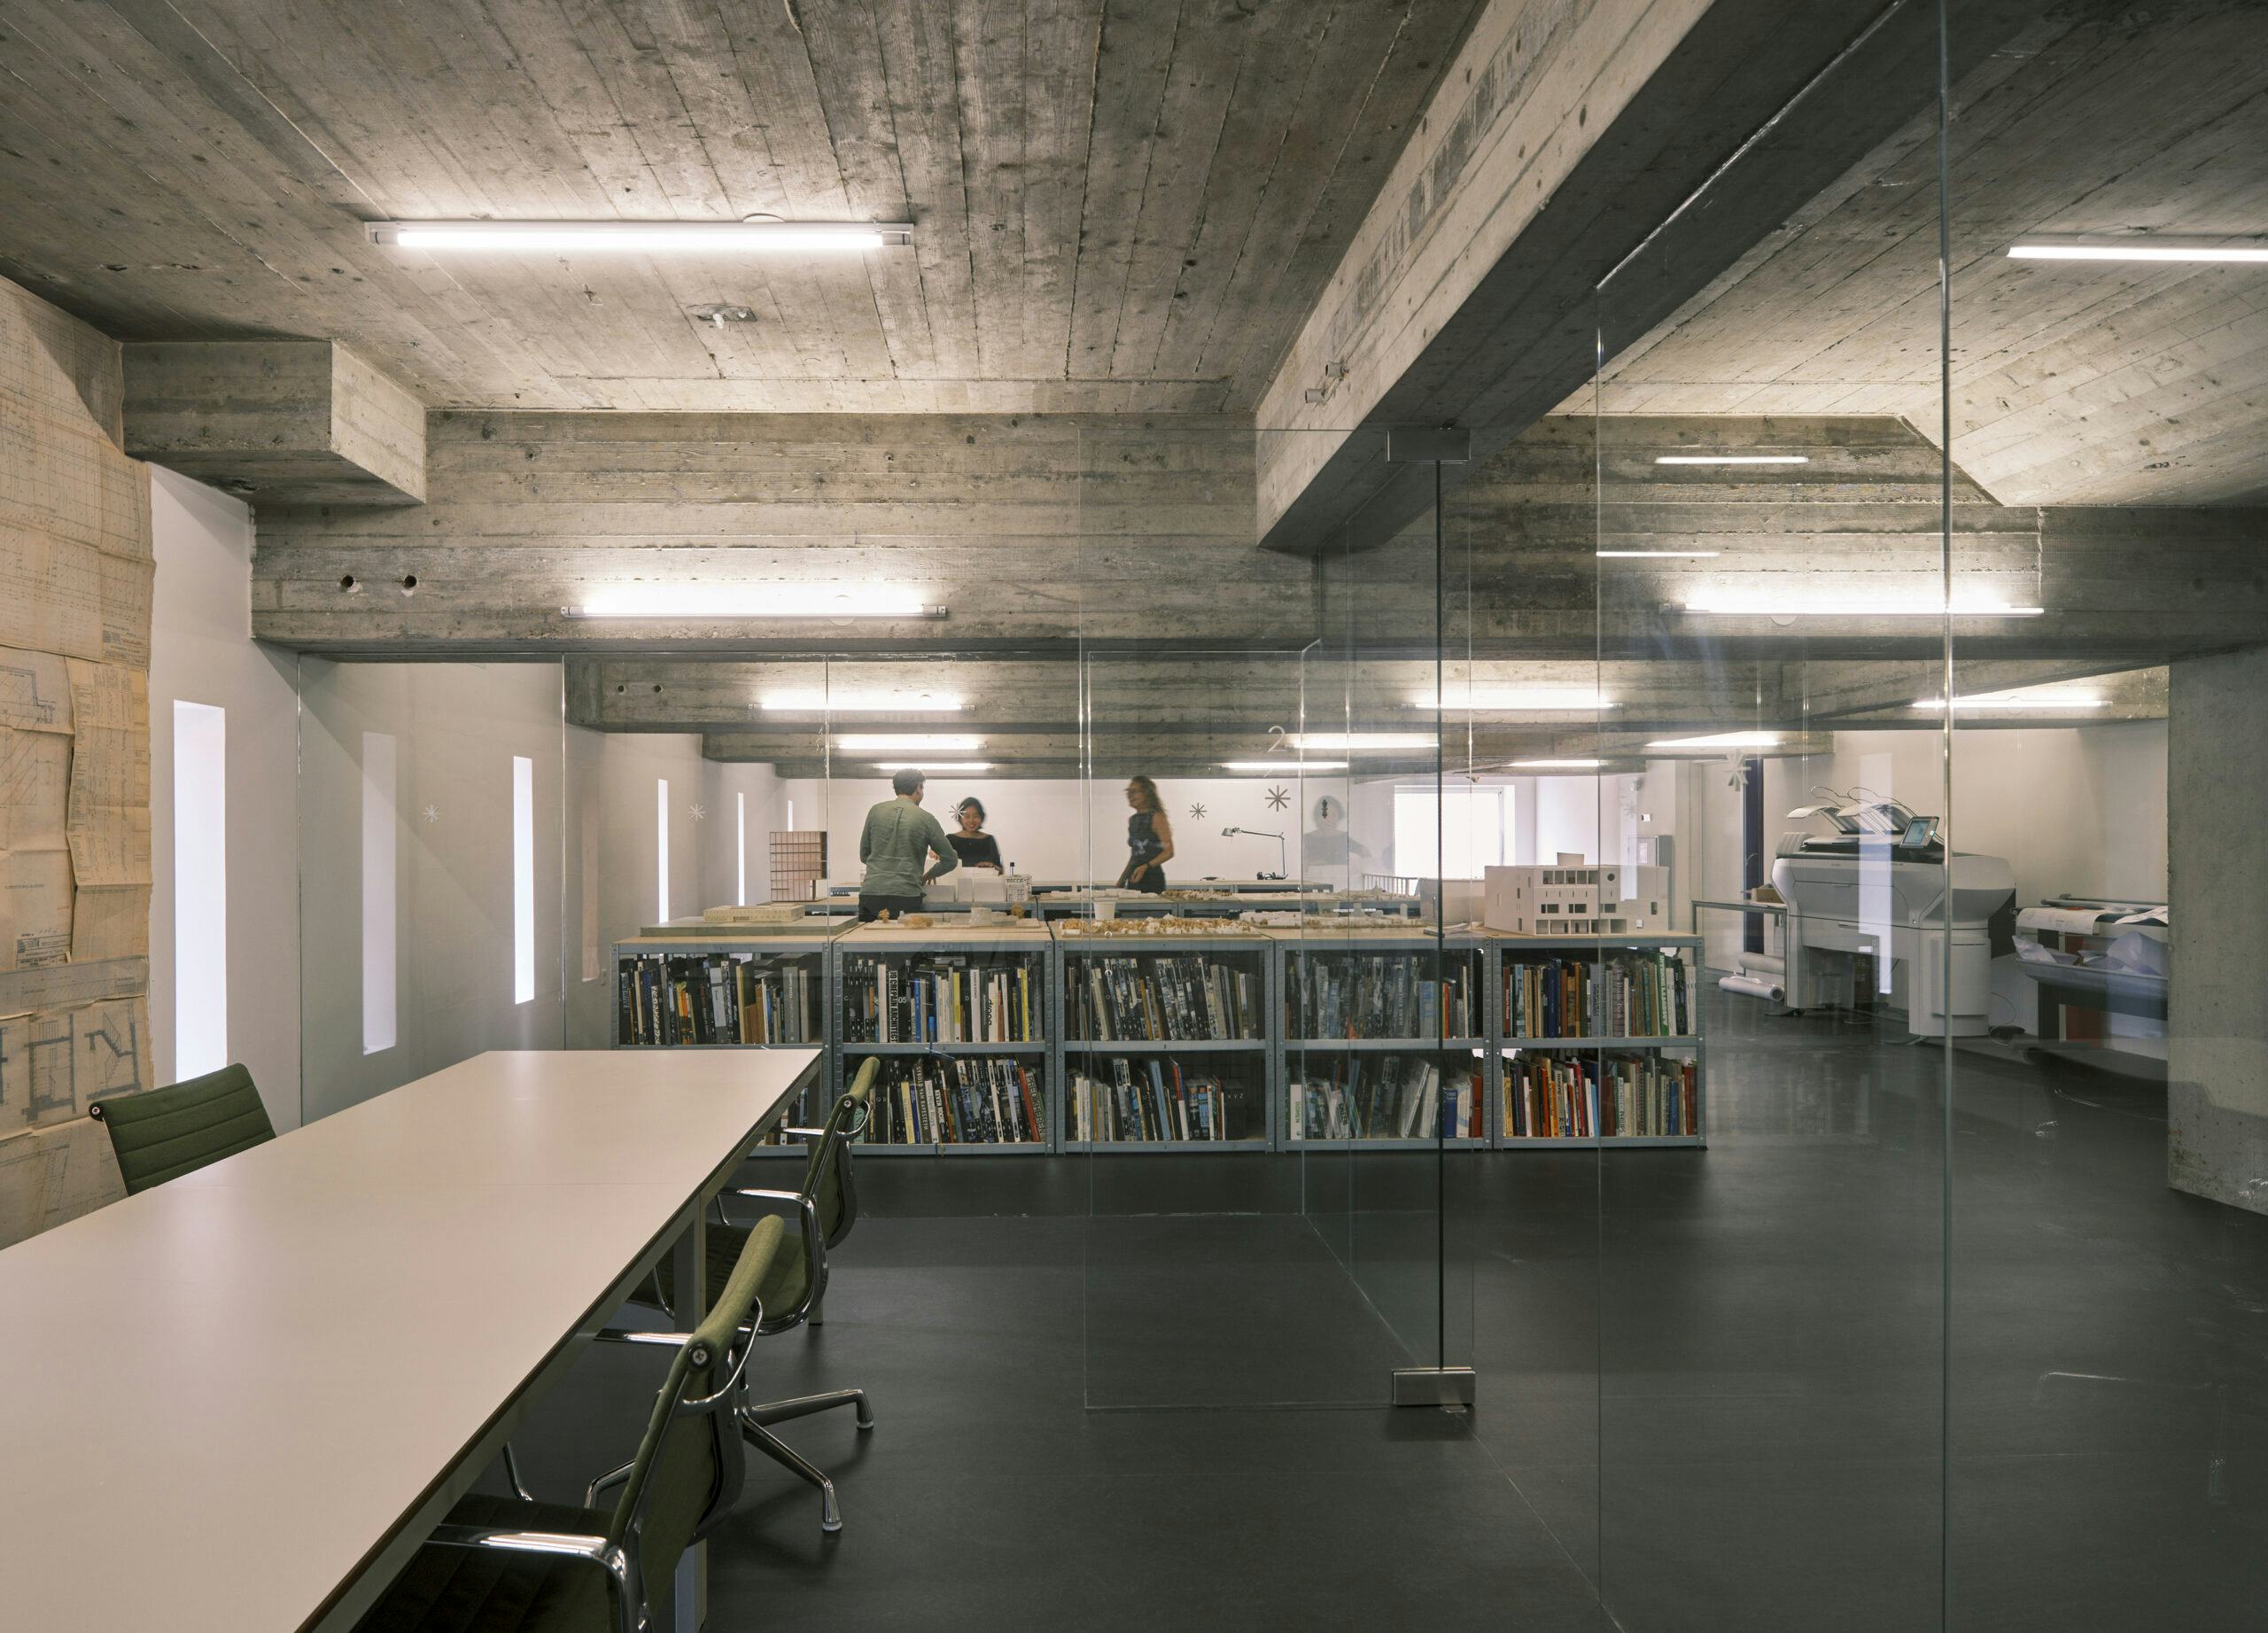 Het archief en een vergaderruimte in het nieuwe kantoor van Bedaux de Brouwer. Beeld René de Wit